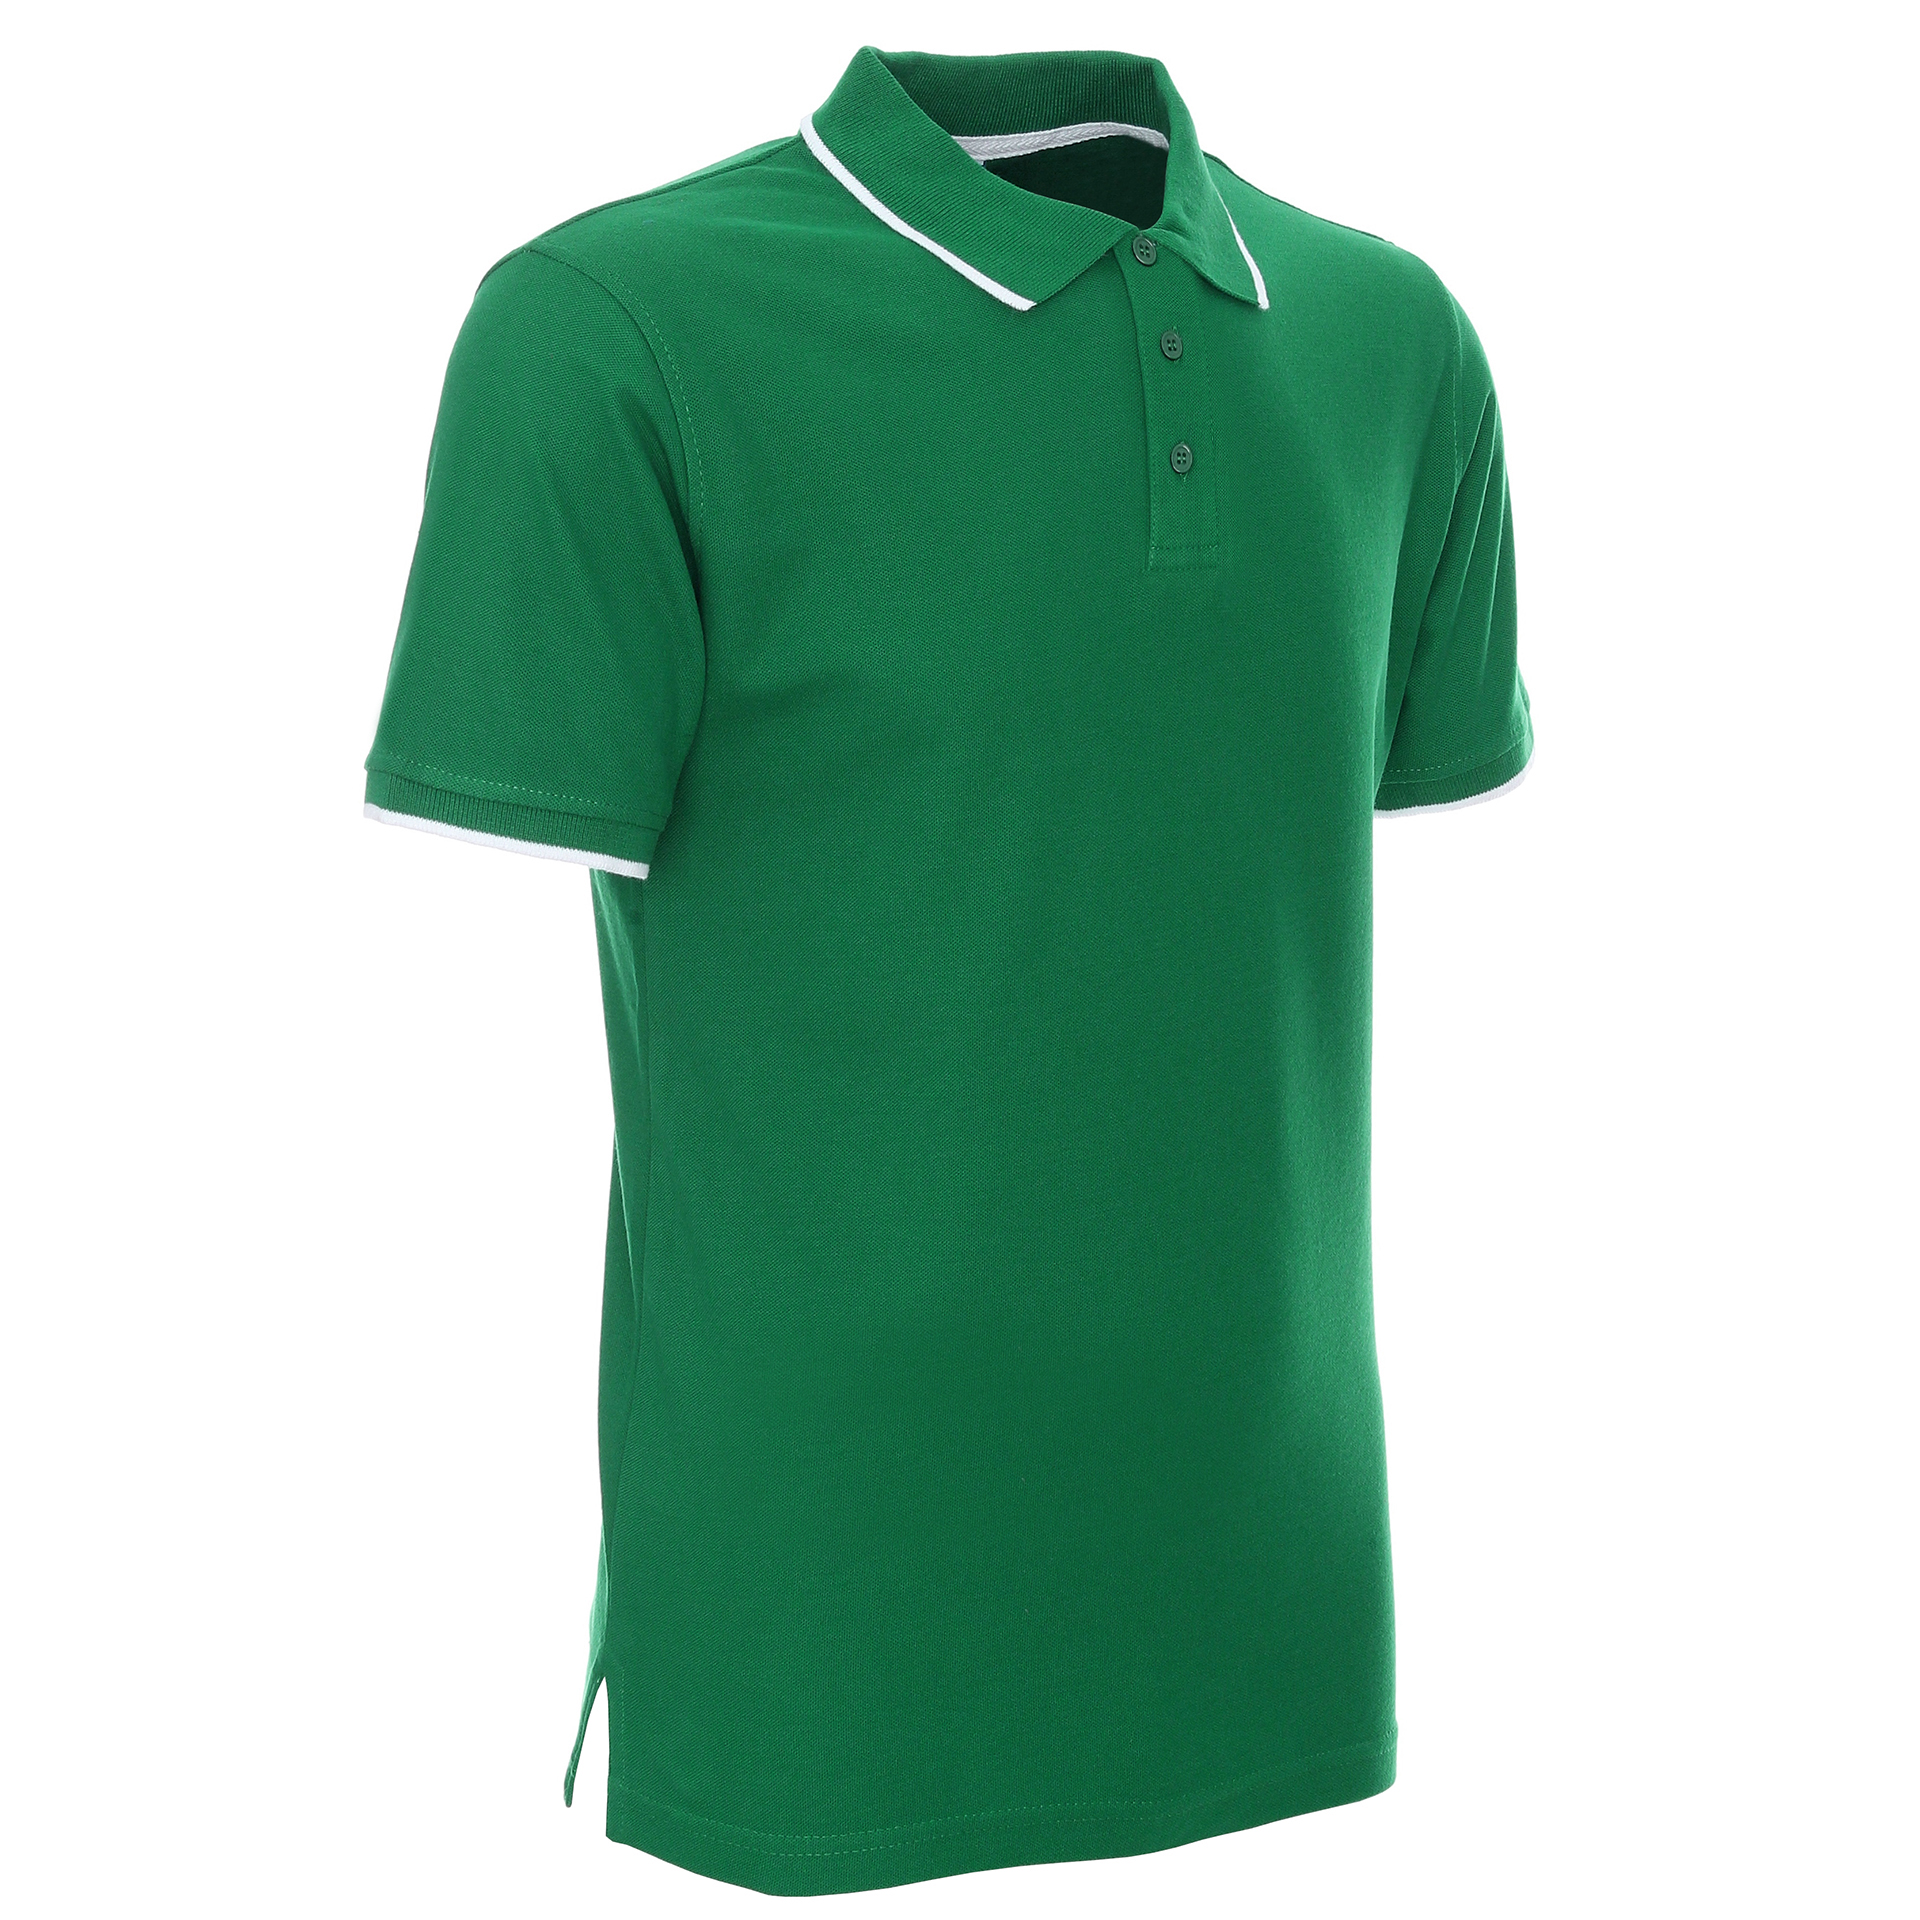 Koszulka Polo Promostars Line - zielona z białym wykończeniem